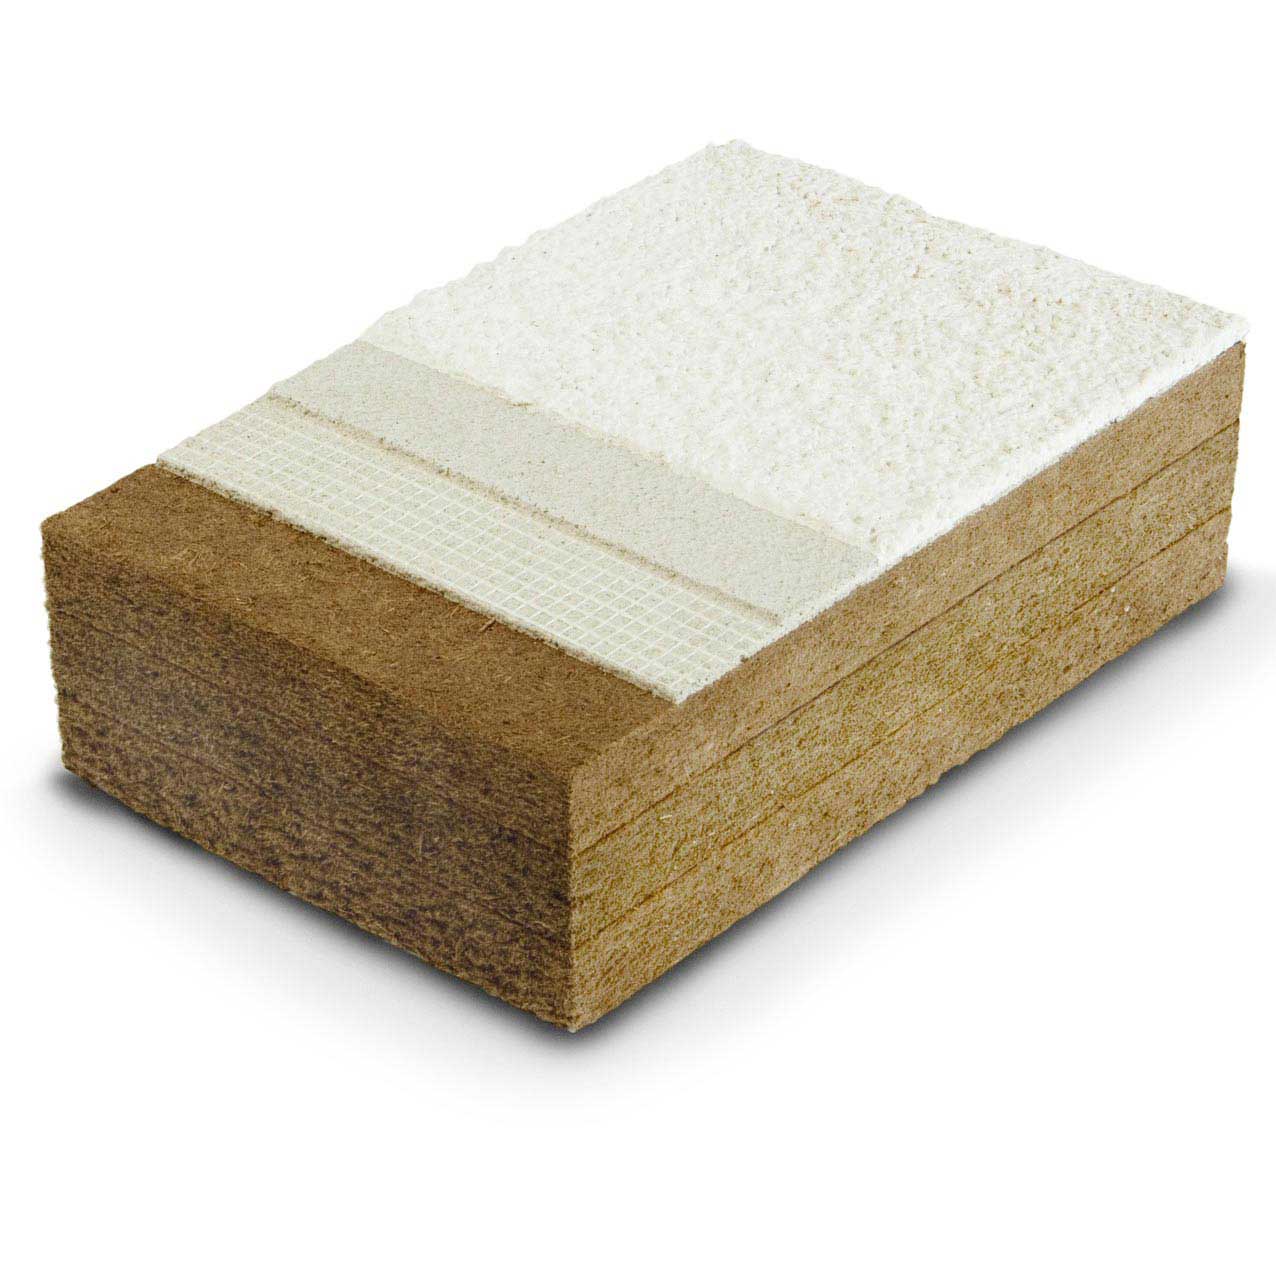 Pannelli isolanti in fibra di legno FiberTherm Protect densità 230, 265kg/mc